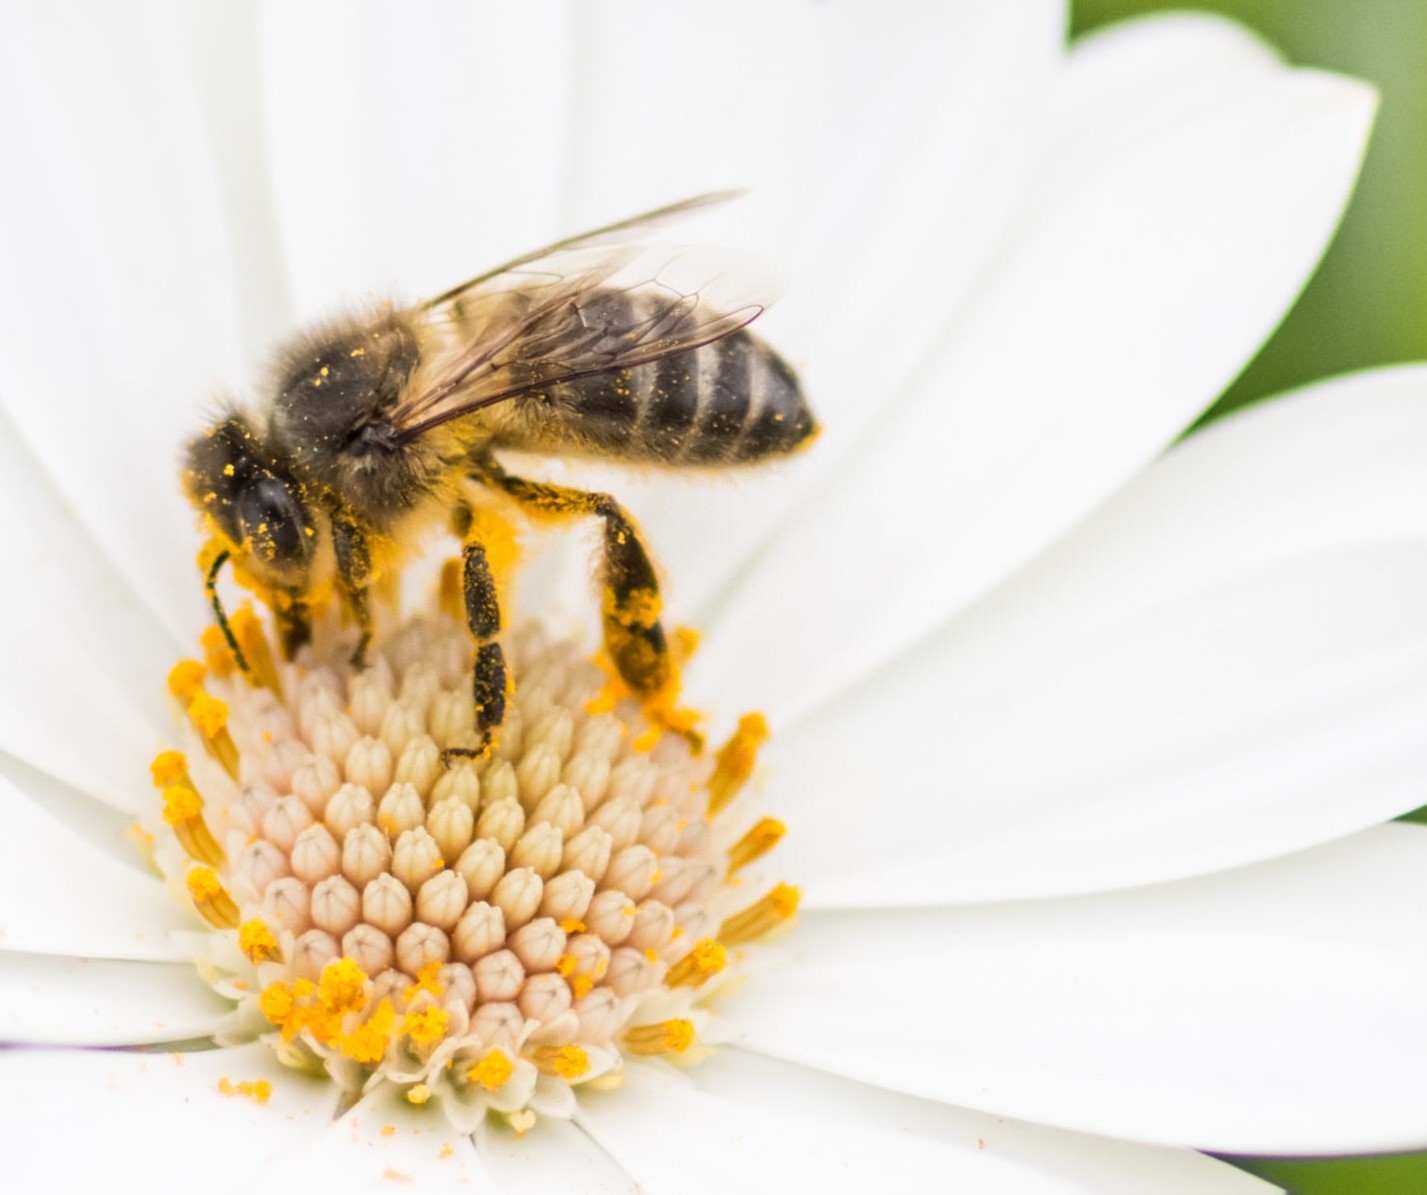 Arıların Büyük Çaba Sonucunda Ürettikleri “Mükemmel Gıda” Köyceğiz Balı Arı Poleni